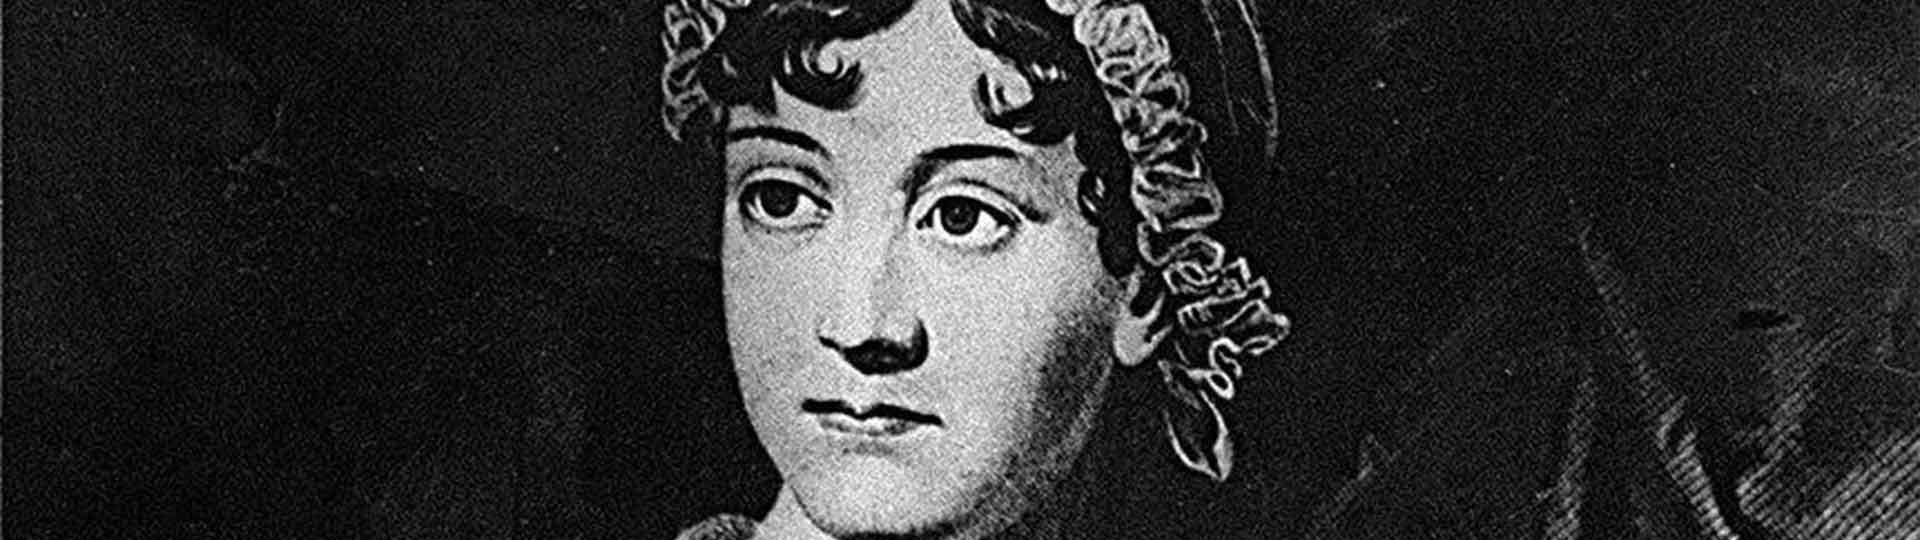 Aventuras pela Inglaterra de Jane Austen: Winchester